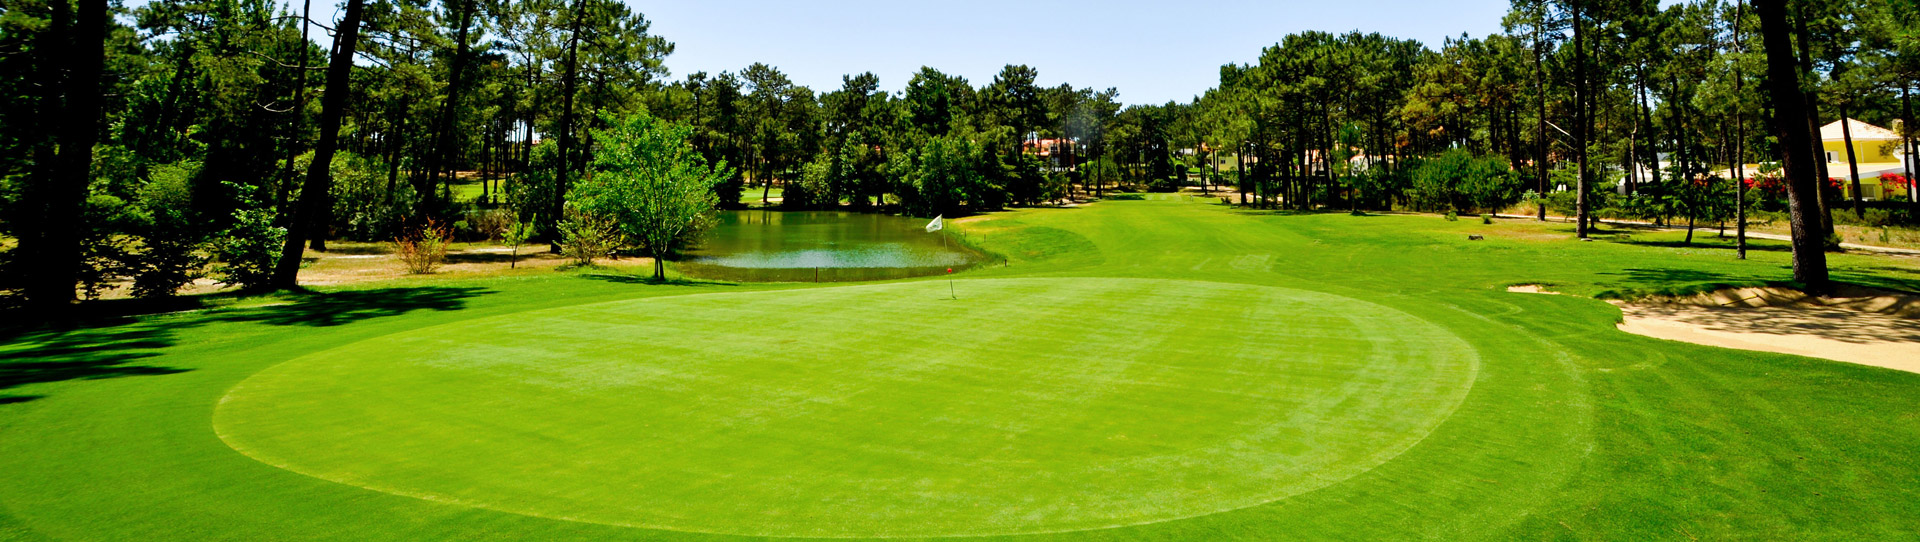 Portugal golf courses - Aroeira Pines Classic Golf Course (ex Aroeira I) - Photo 1